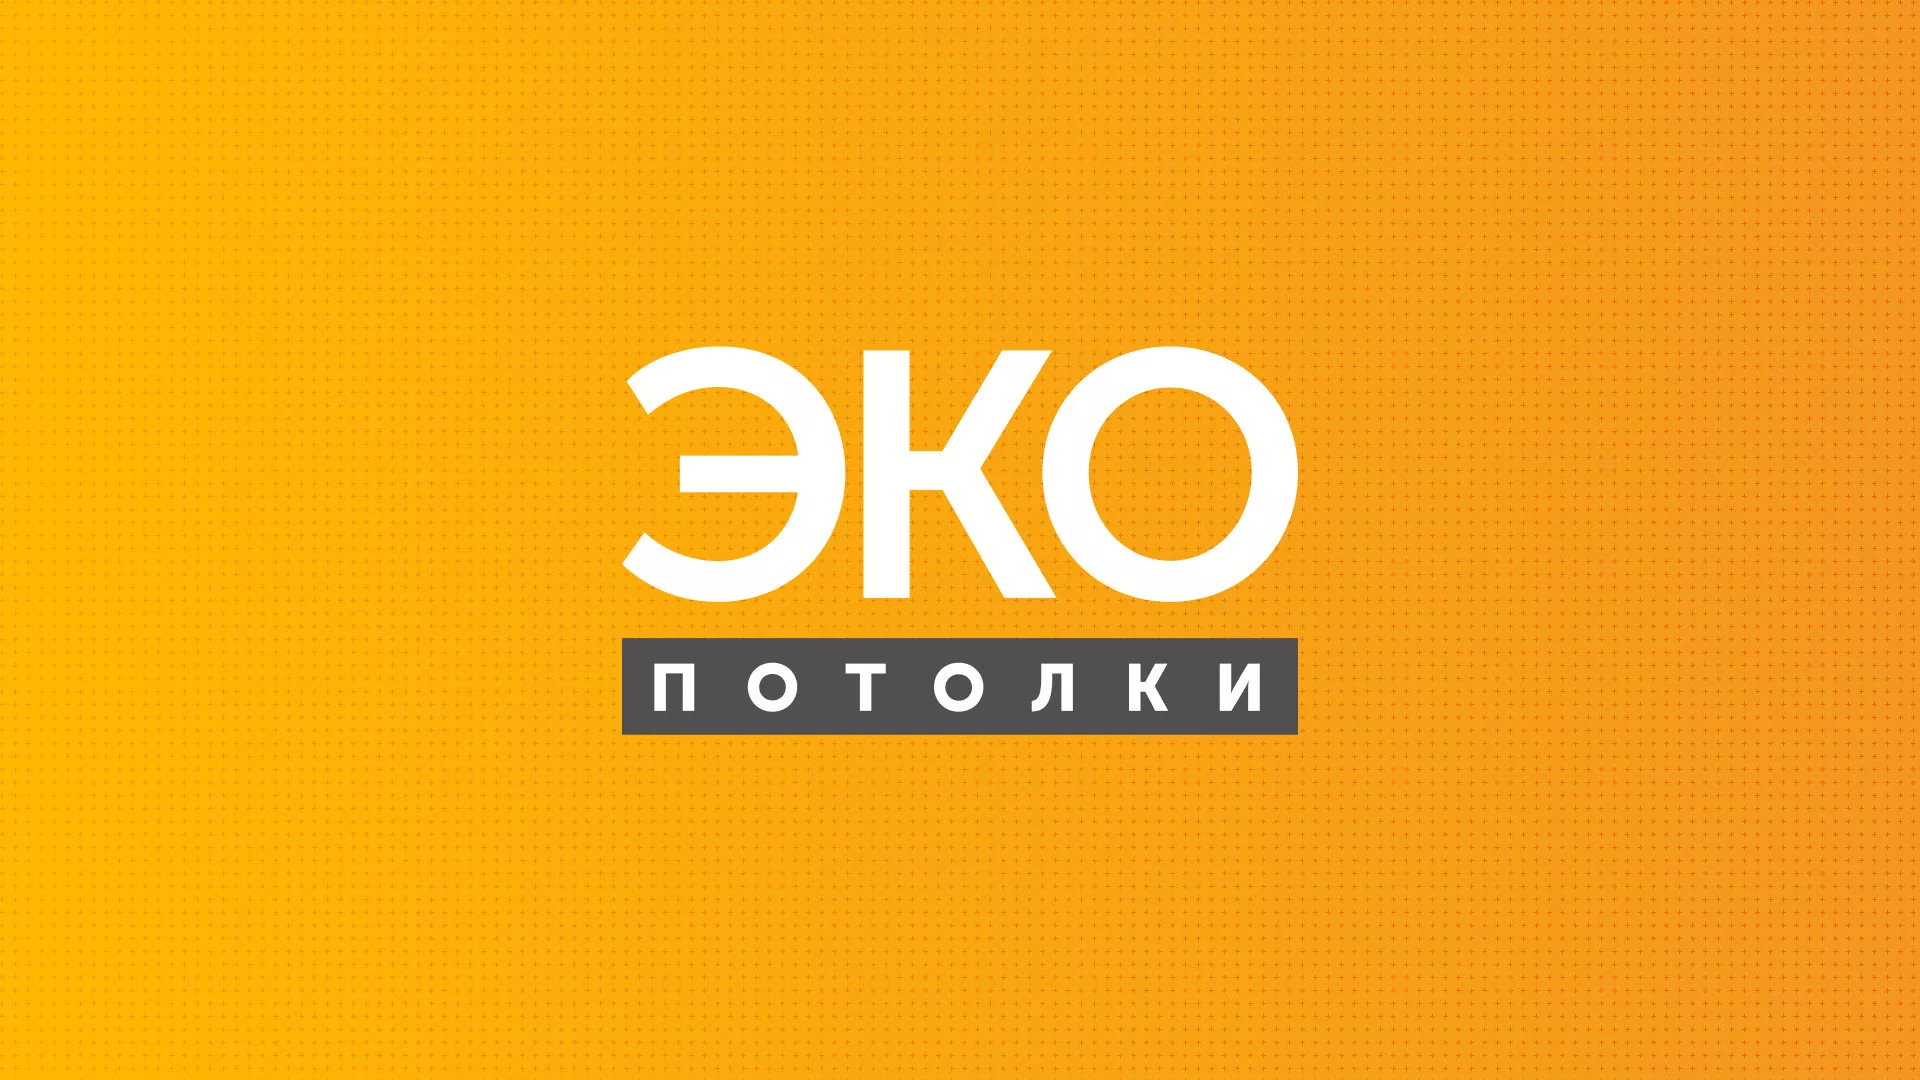 Разработка сайта по натяжным потолкам «Эко Потолки» в Переславле-Залесском